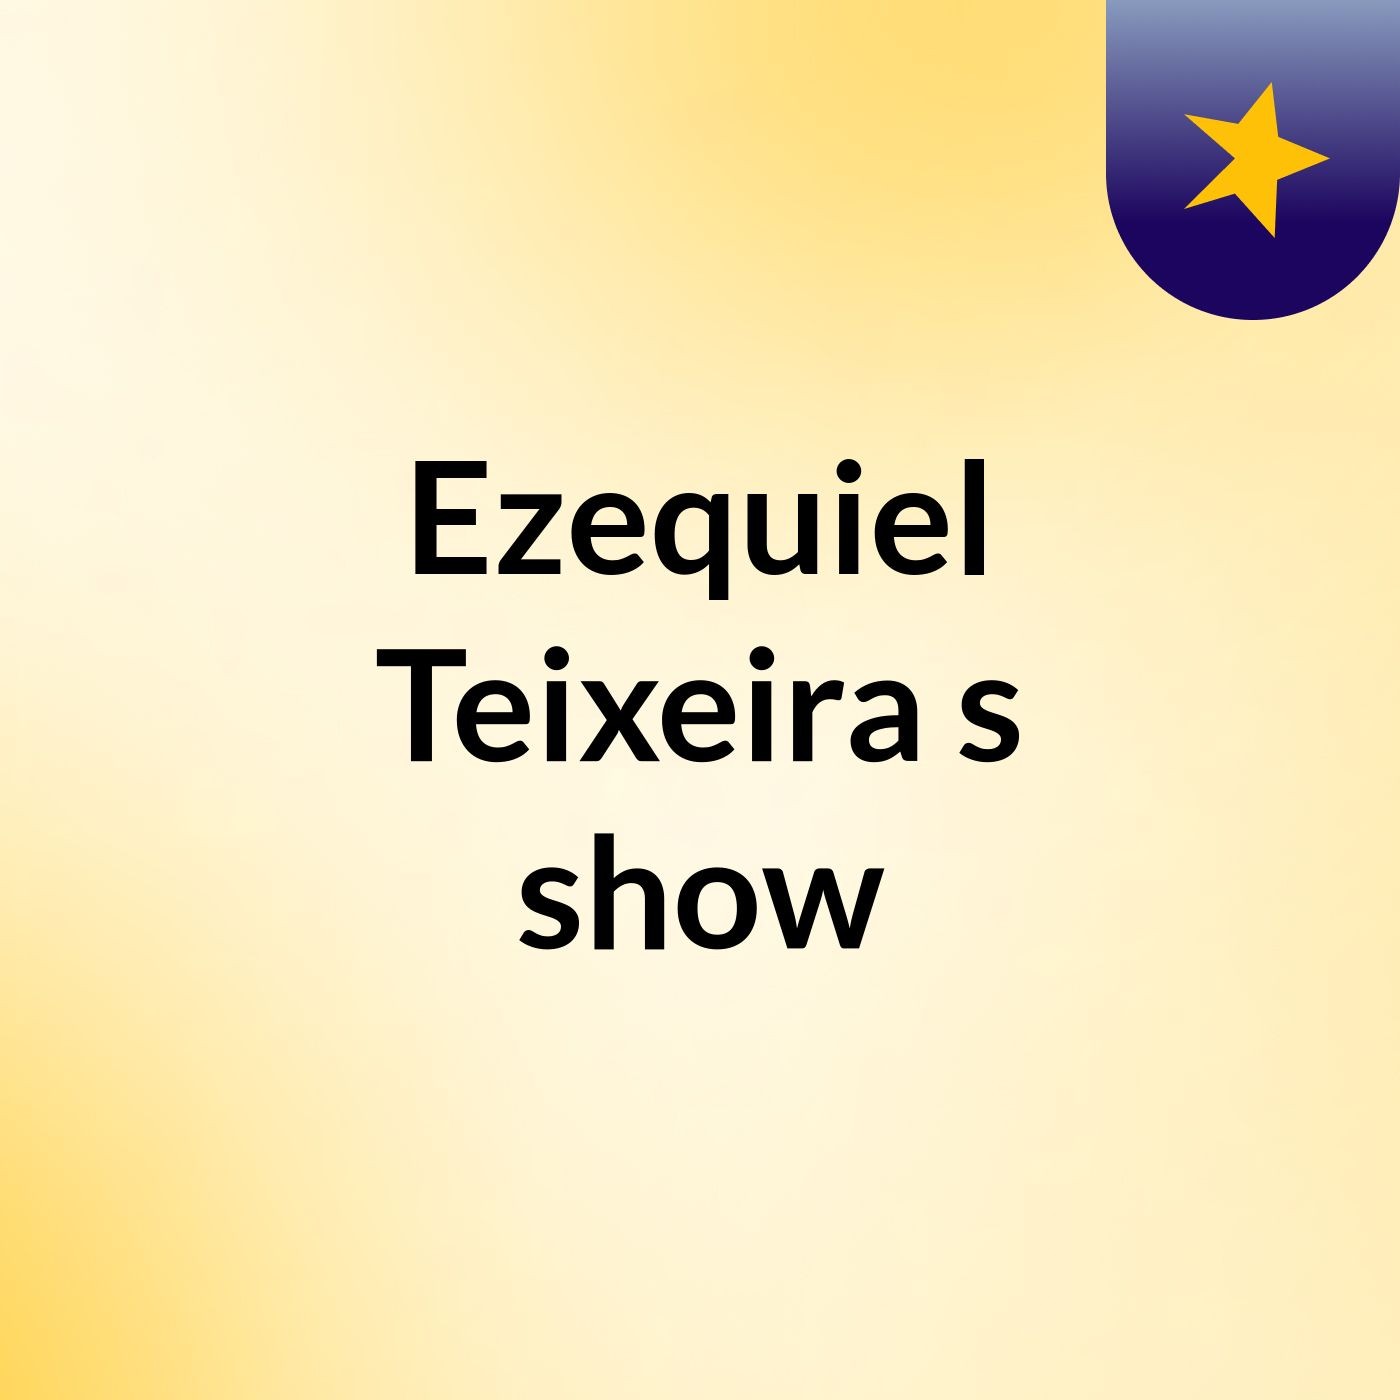 Ezequiel Teixeira's show